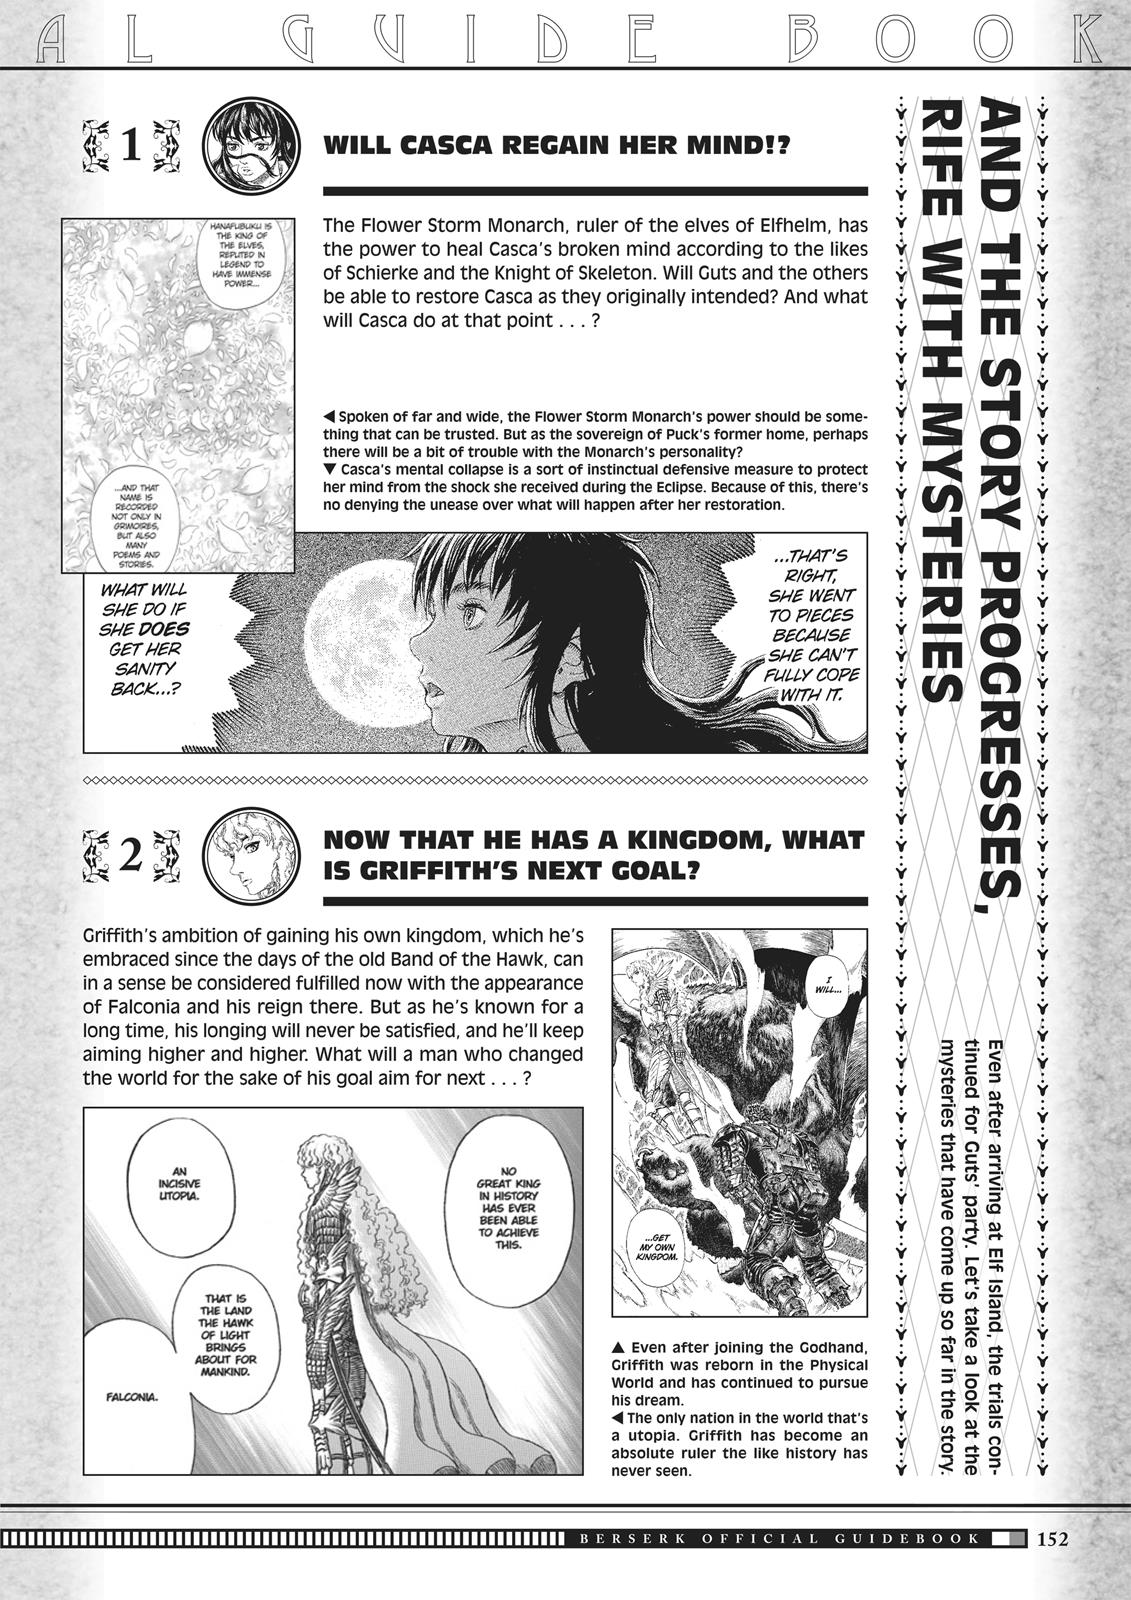 Berserk Manga Chapter 350.5 image 150